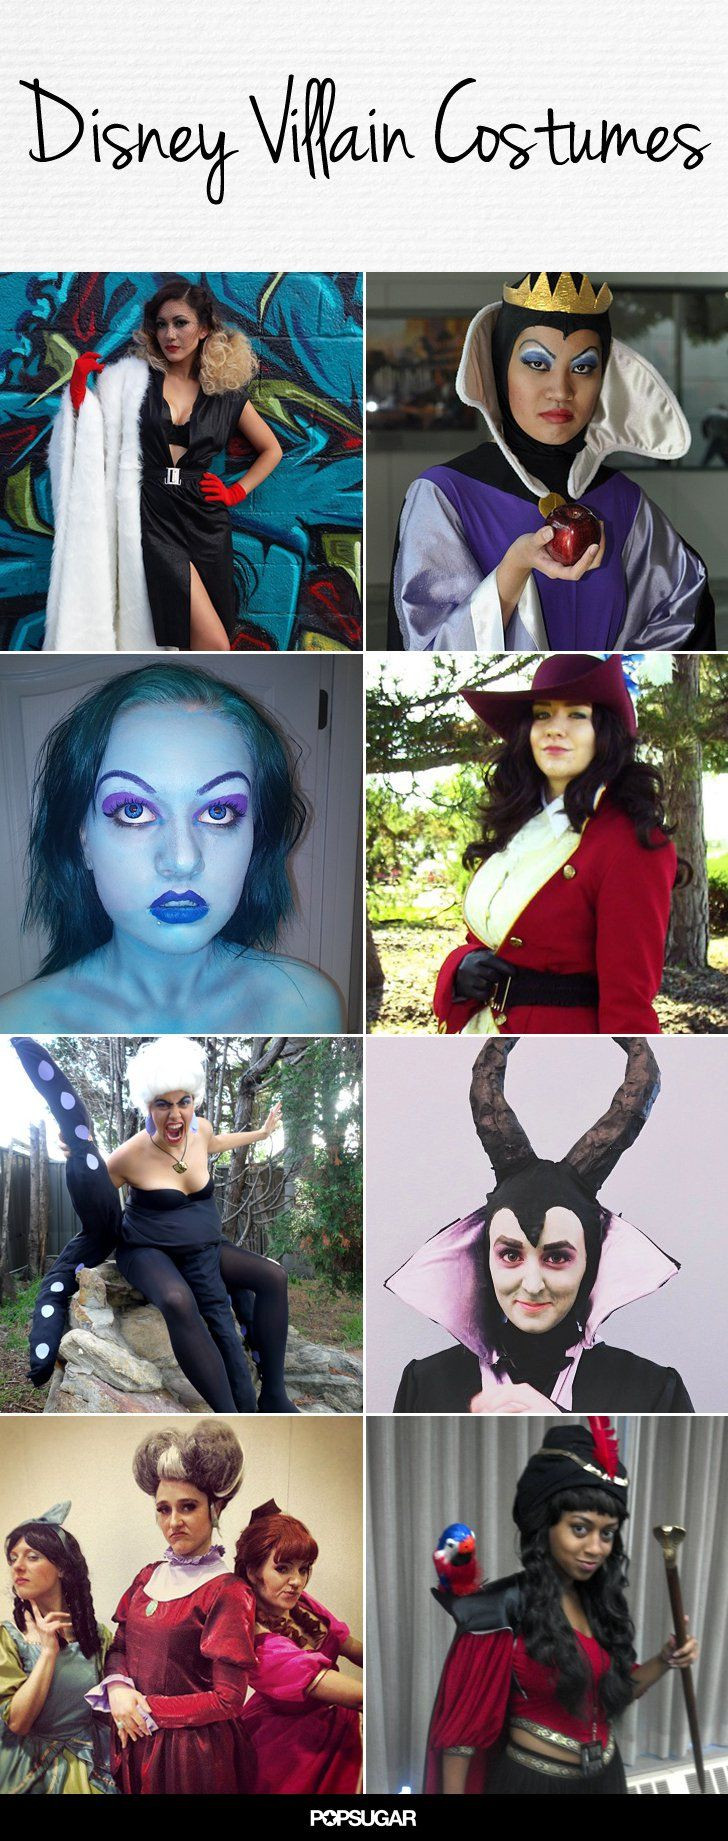 Villain Costumes DIY
 The 25 best Villain costumes ideas on Pinterest